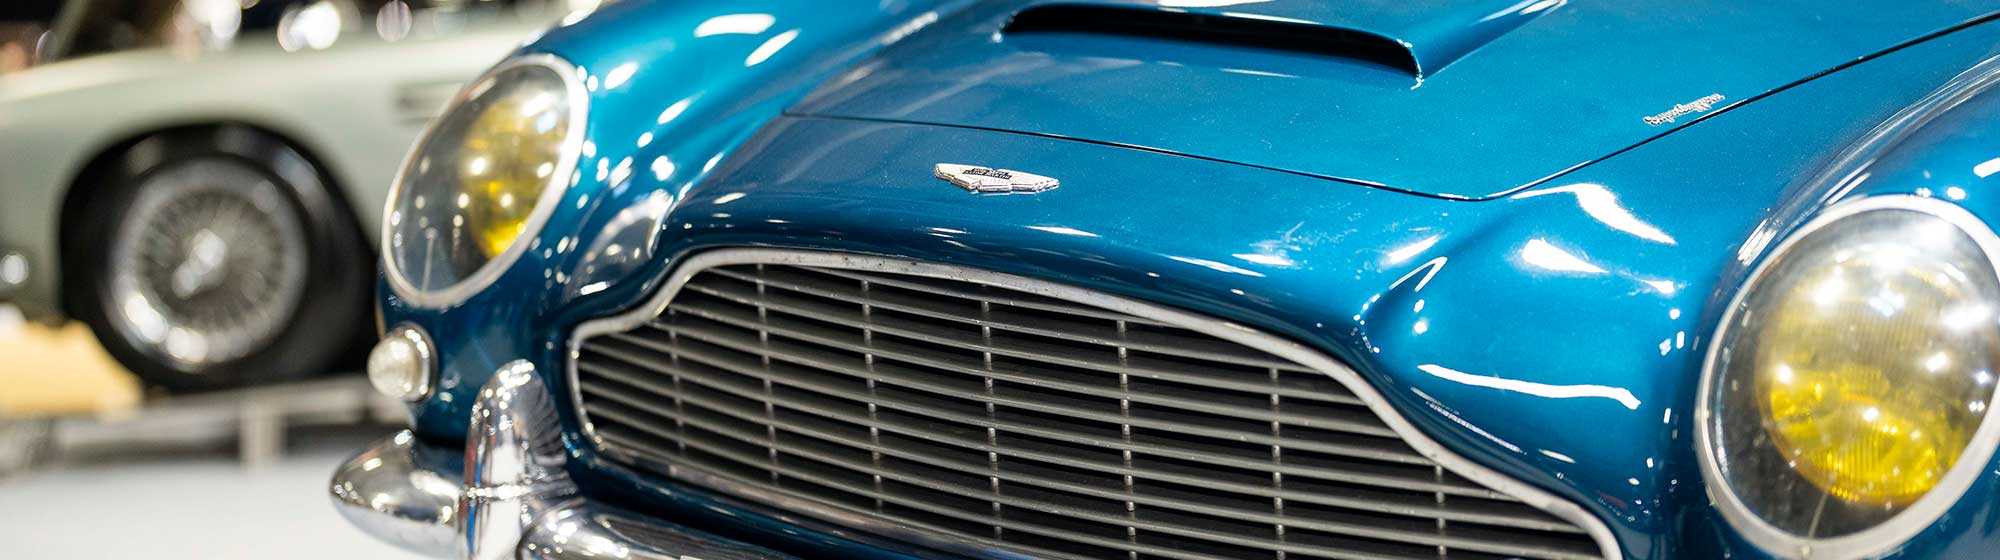 Bleu Vintage Aston Martin